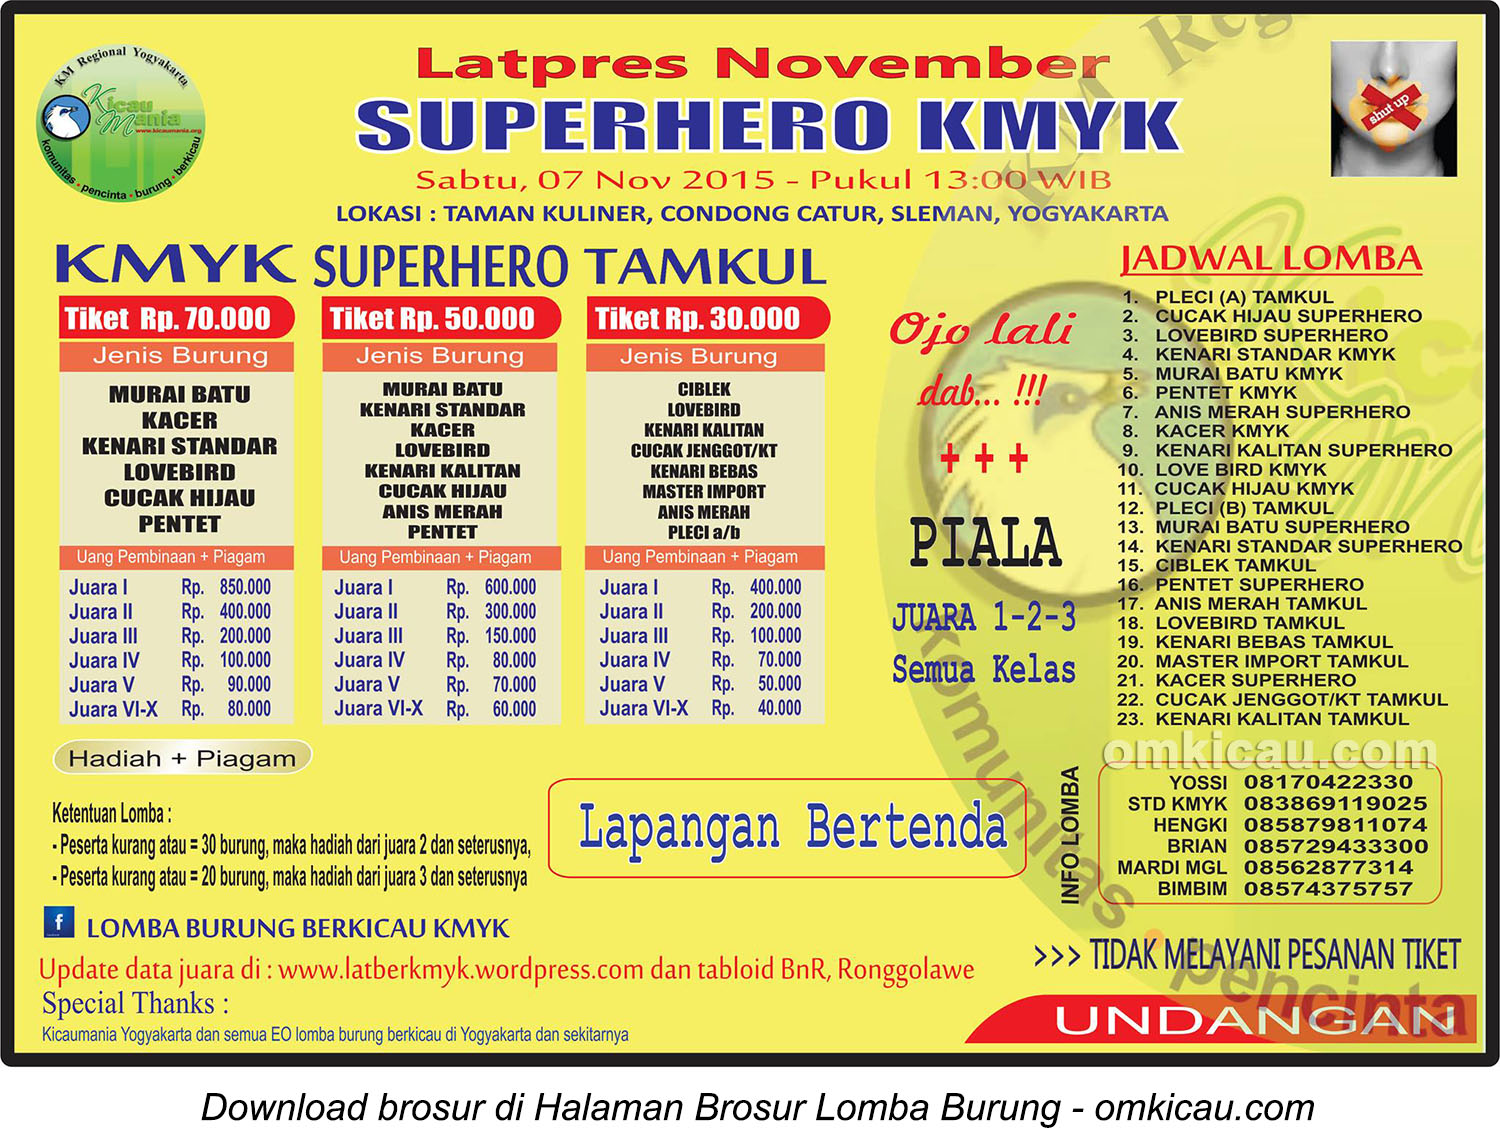 Brosur Latpres November Superhero KMYK, Jogja, 7 November 2015